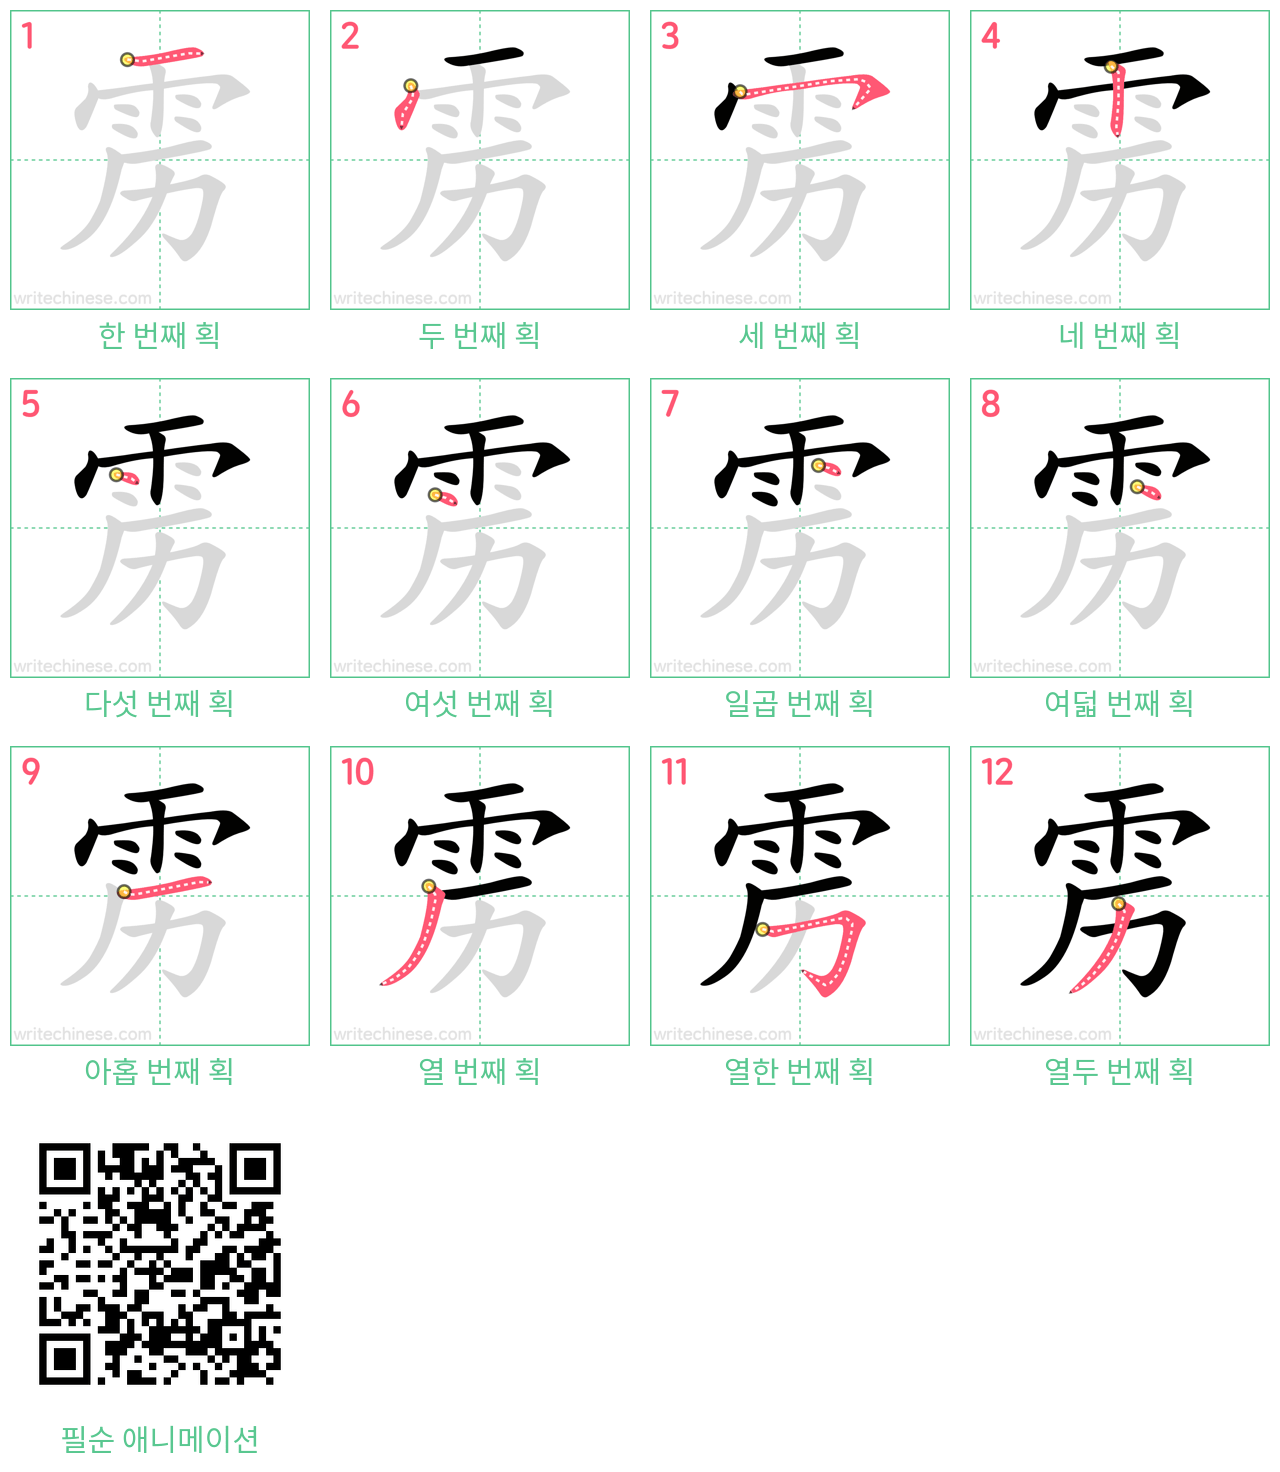 雳 step-by-step stroke order diagrams